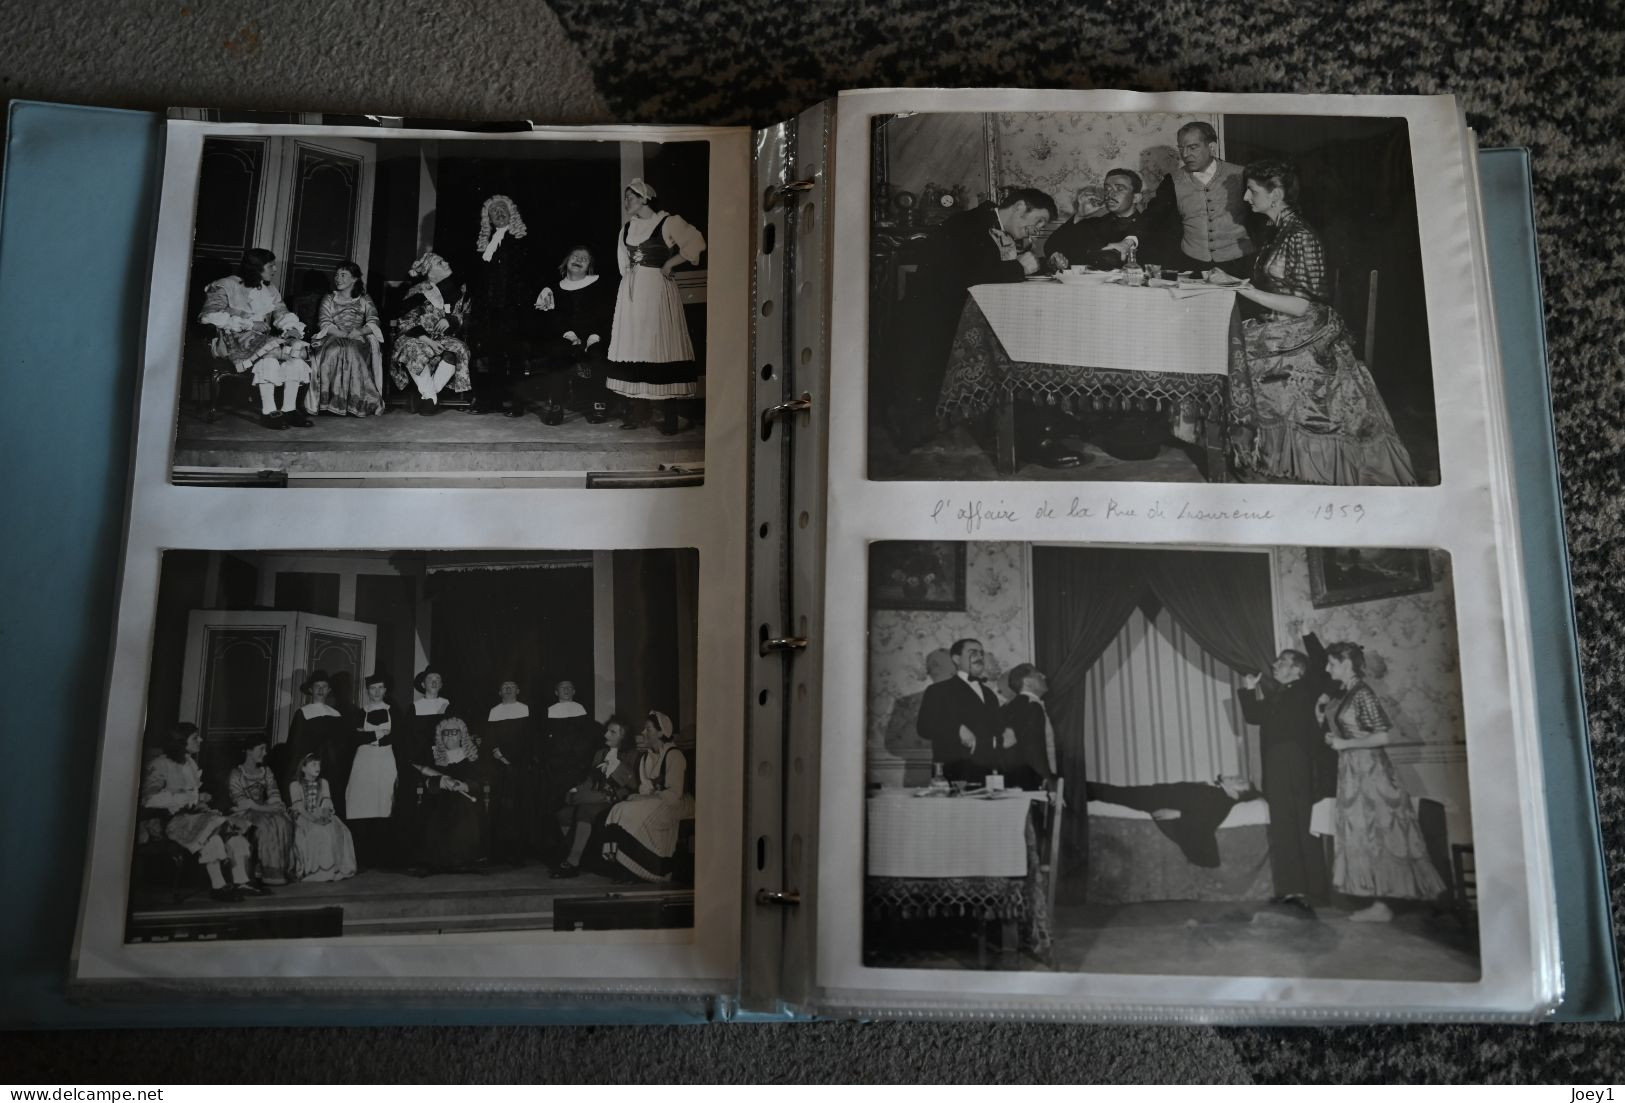 2 Albums magnifique,histoire d une troupe de Théatre de 1950 à 1968 photos 13/18